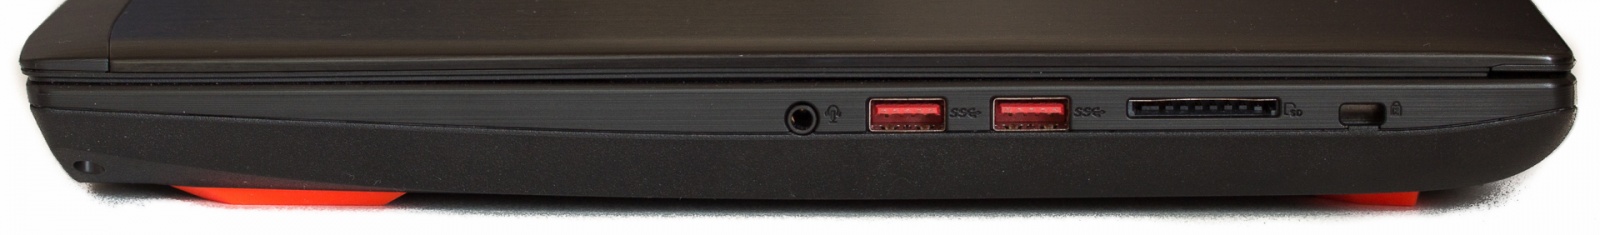 ноутбук ASUS GL502VM порты с правой стороны